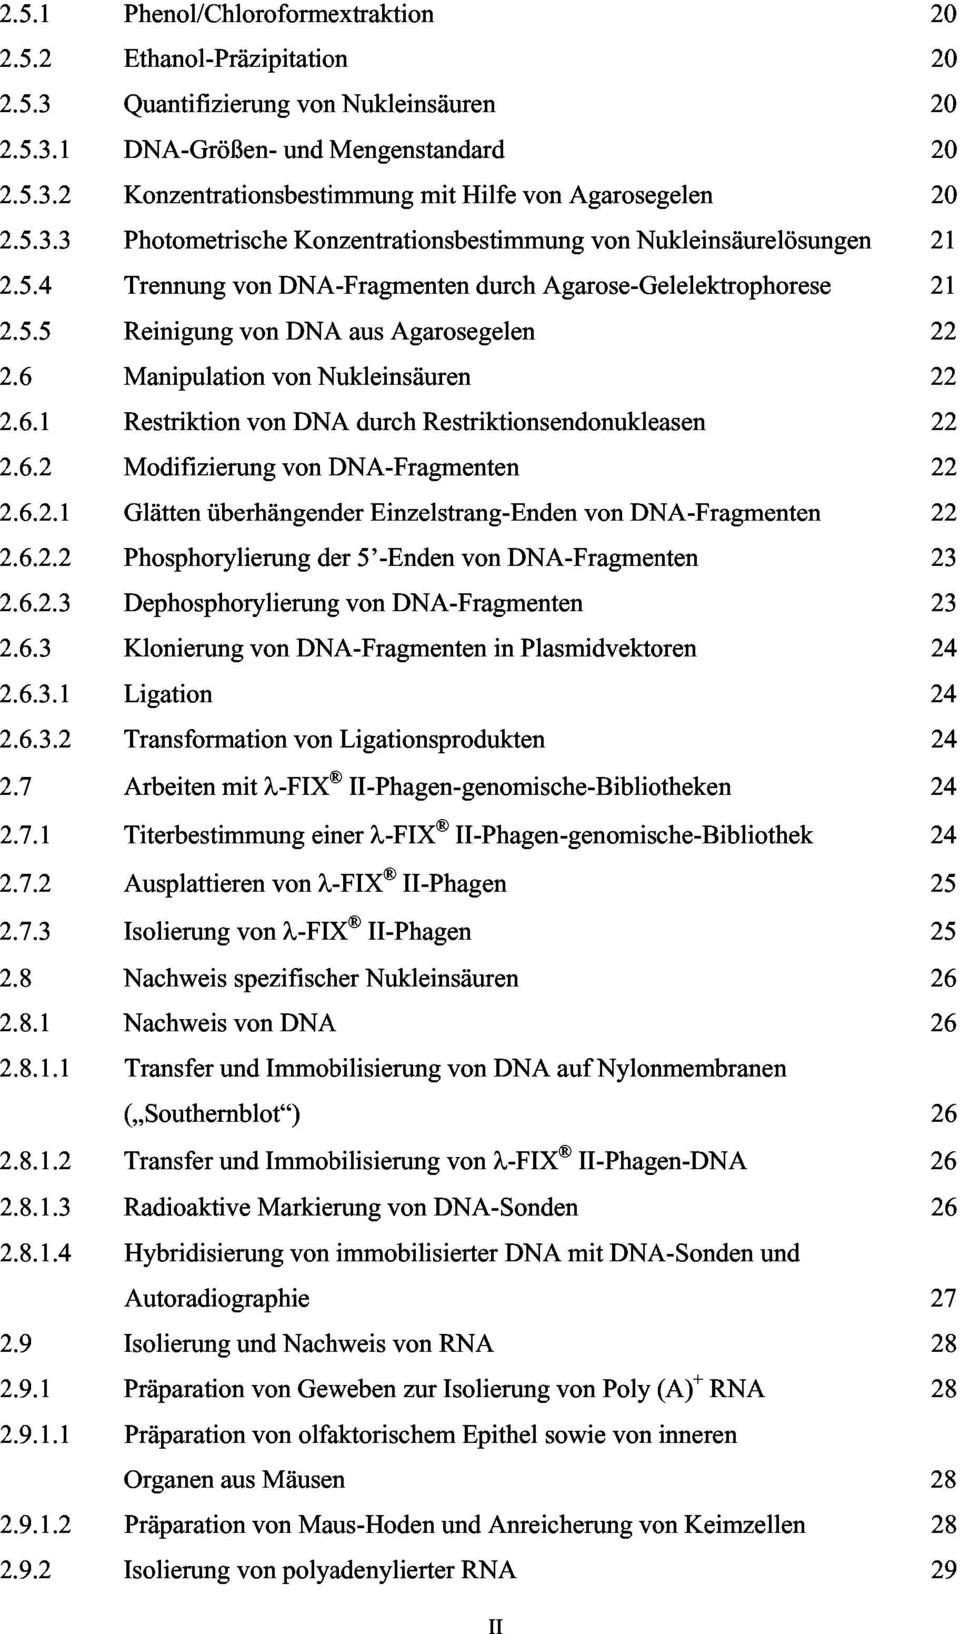 6 Manipulation von Nukleinsäuren 22 2.6.1 Restriktion von DNA durch Restriktionsendonukleasen 22 2.6.2 Modifizierung von DNA-Fragmenten 22 2.6.2.1 Glätten überhängender Einzelstrang-Enden von DNA-Fragmenten 22 2.